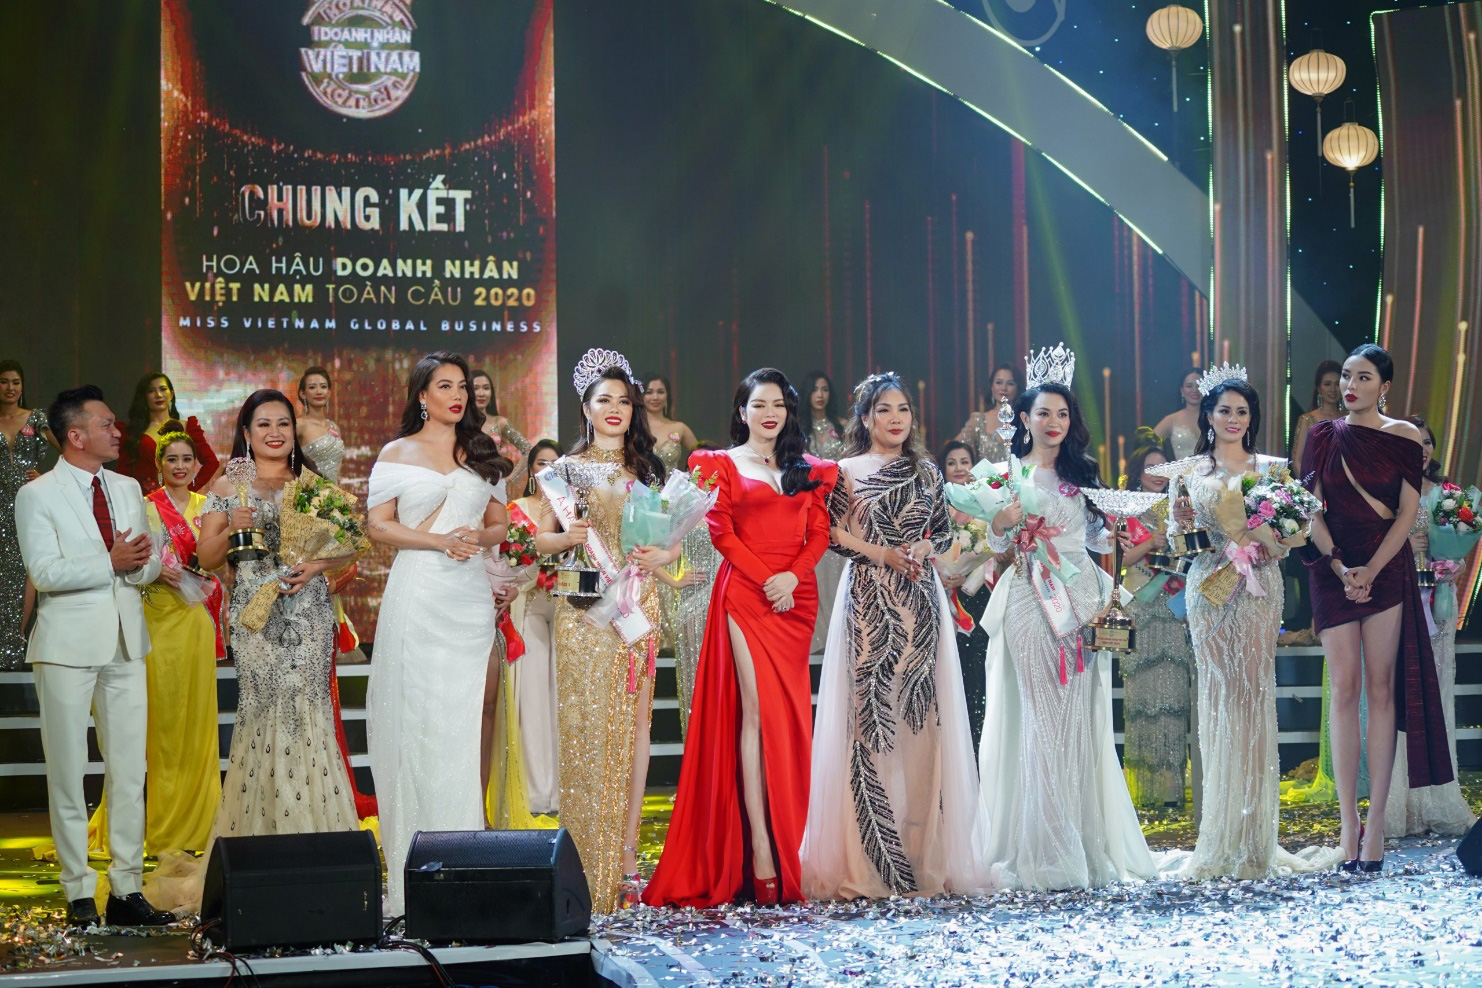 Doanh nhân Vũ Thị Ngọc Anh đăng quang Hoa hậu Doanh nhân Việt Nam Toàn cầu 2020 - Ảnh 6.